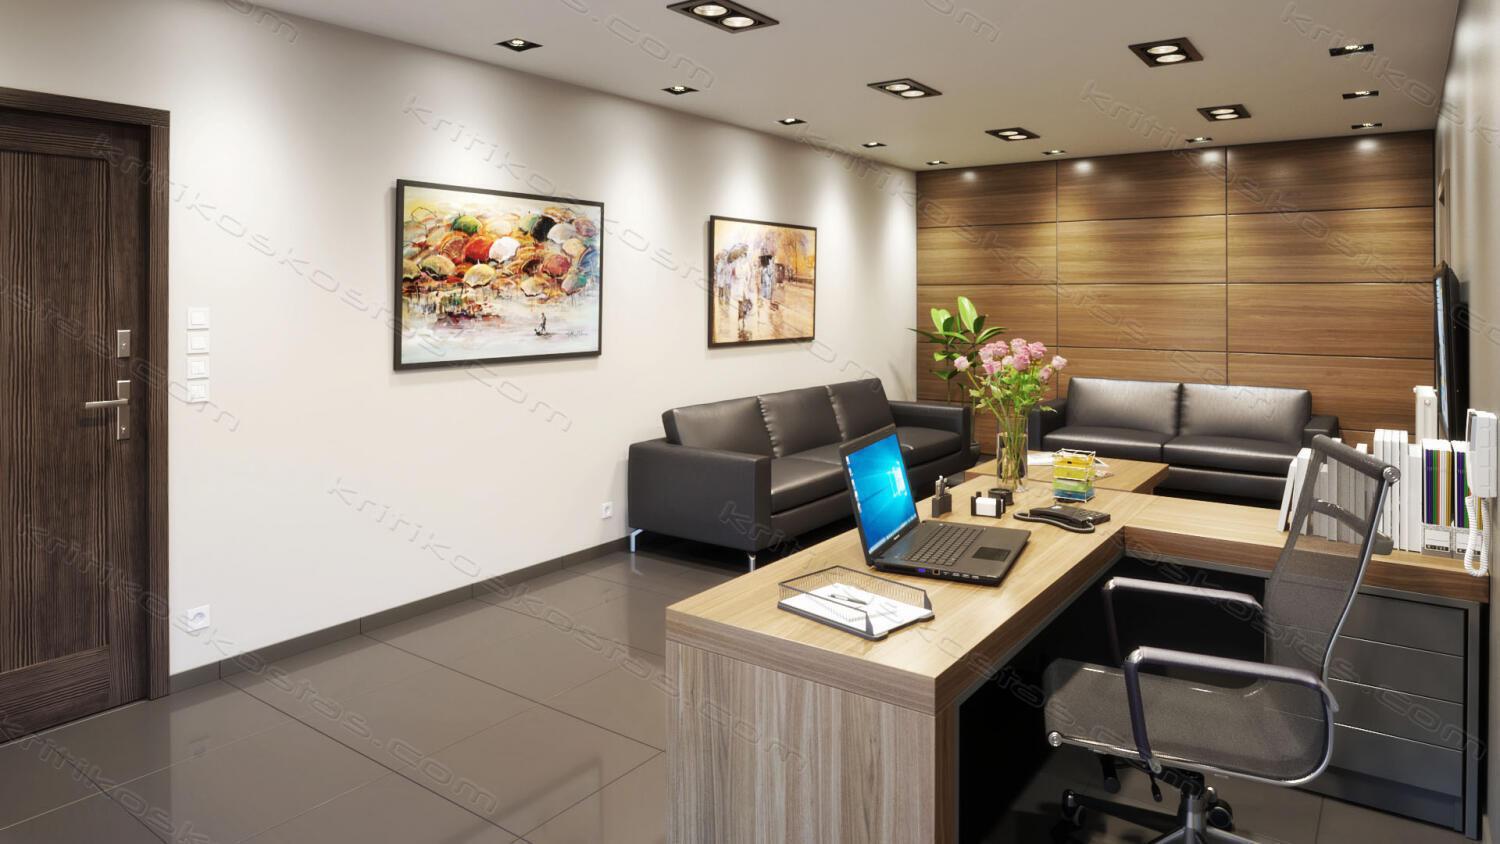 170714_3d-clinics-waiting-room-interior-design-02